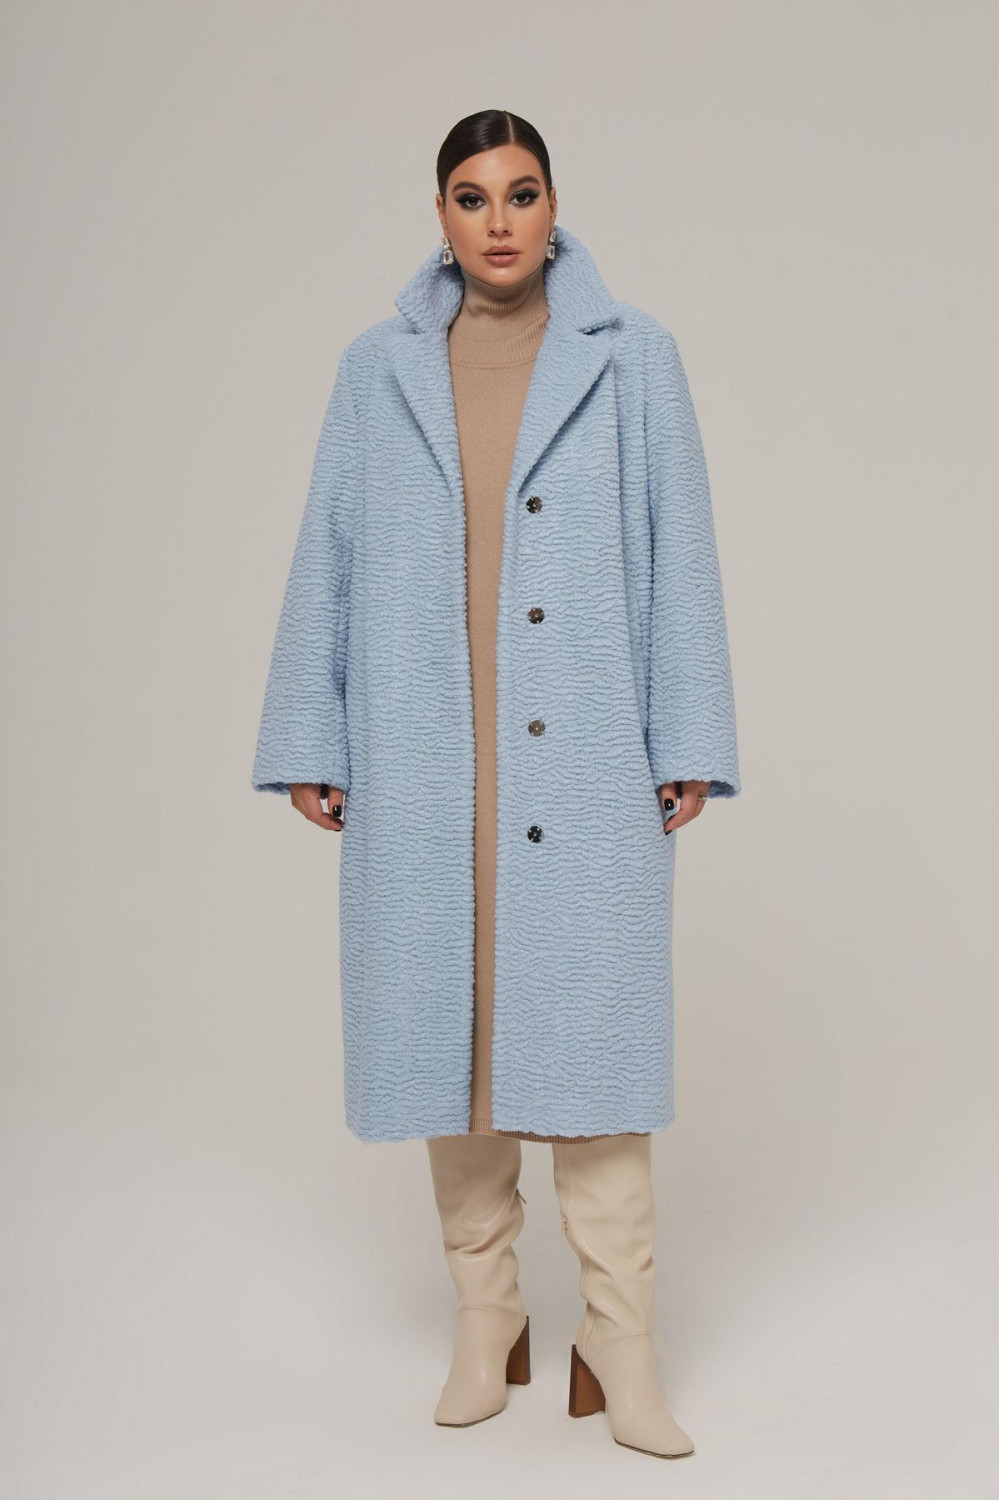 Голубое пальто из фактурного экомеха экошуба в ассортименте большого размера купить